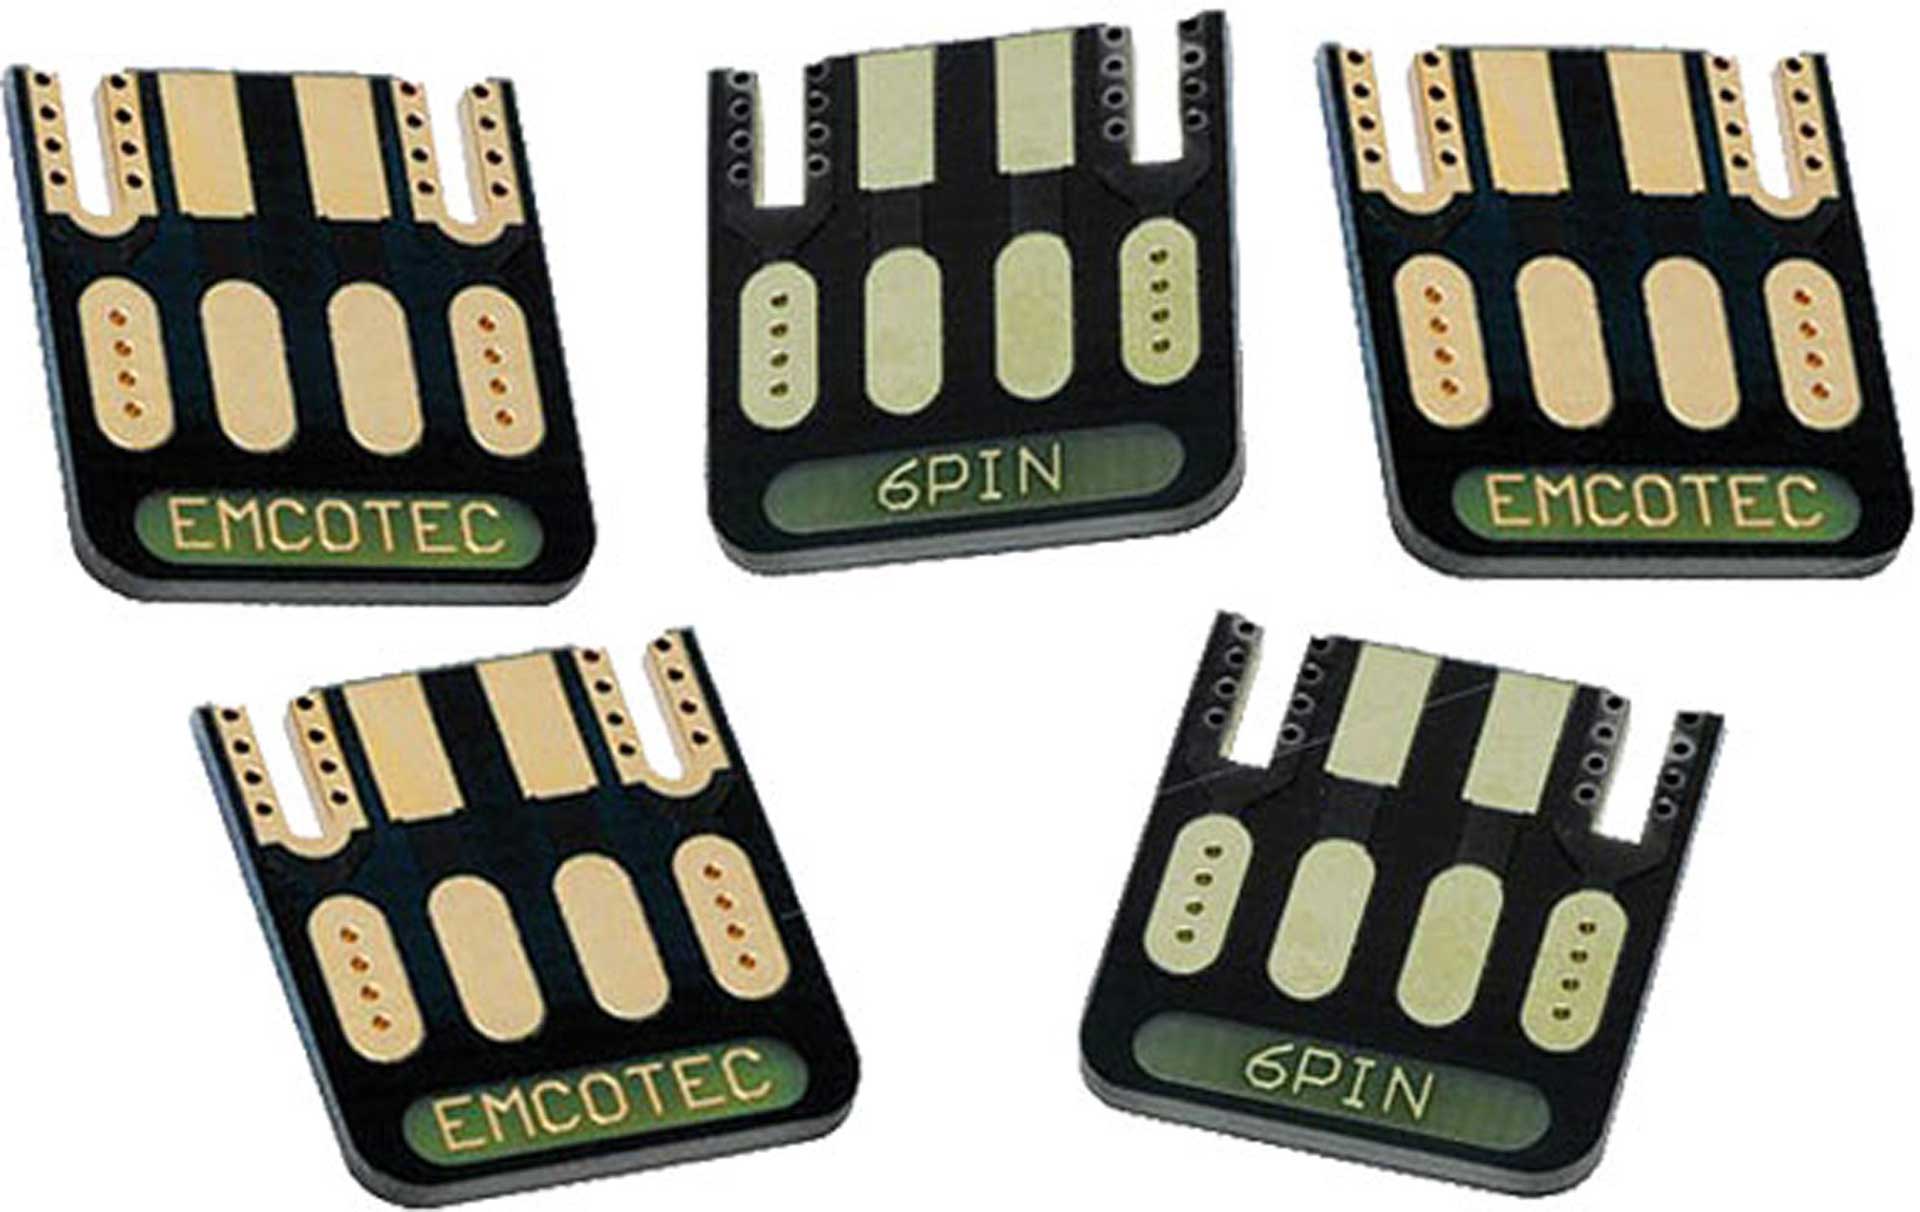 EMCOTEC EMC PLATINE 6-PINS 5 PIÈCES. POUR HOCHSTROMCONNECTEUR